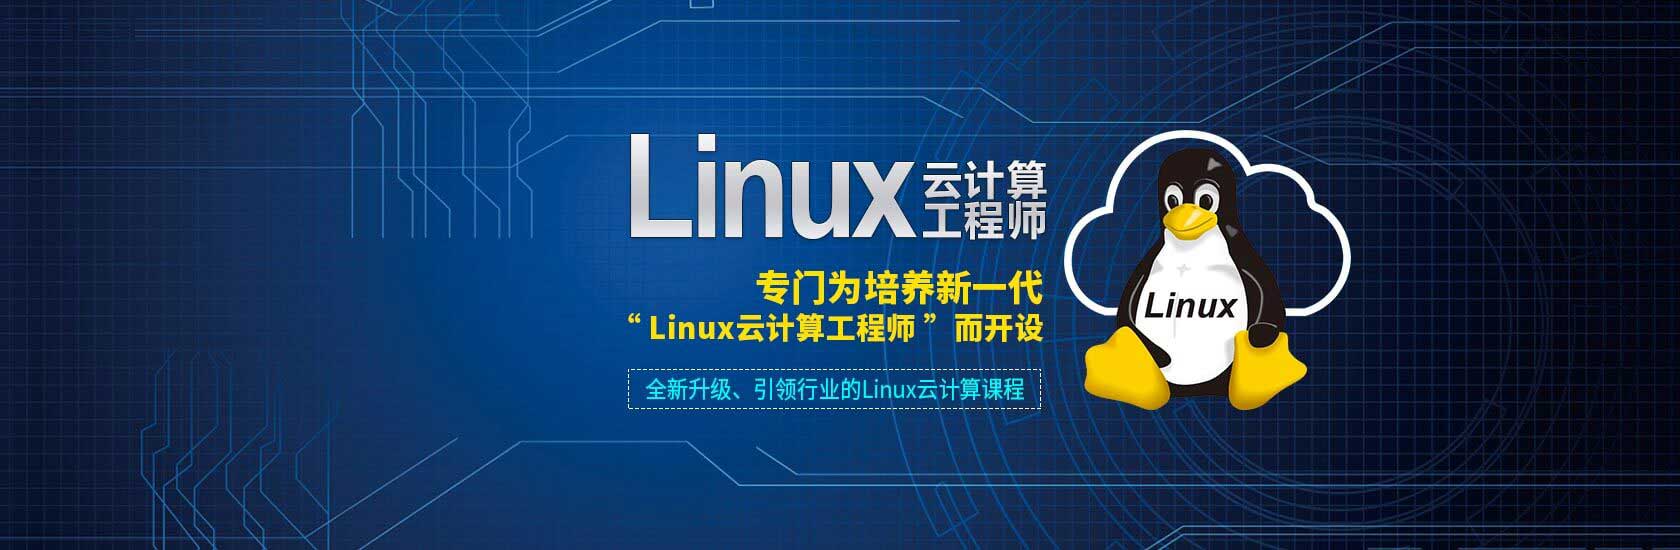 学linux报读linux培训班快速高工资就业,linux工程师